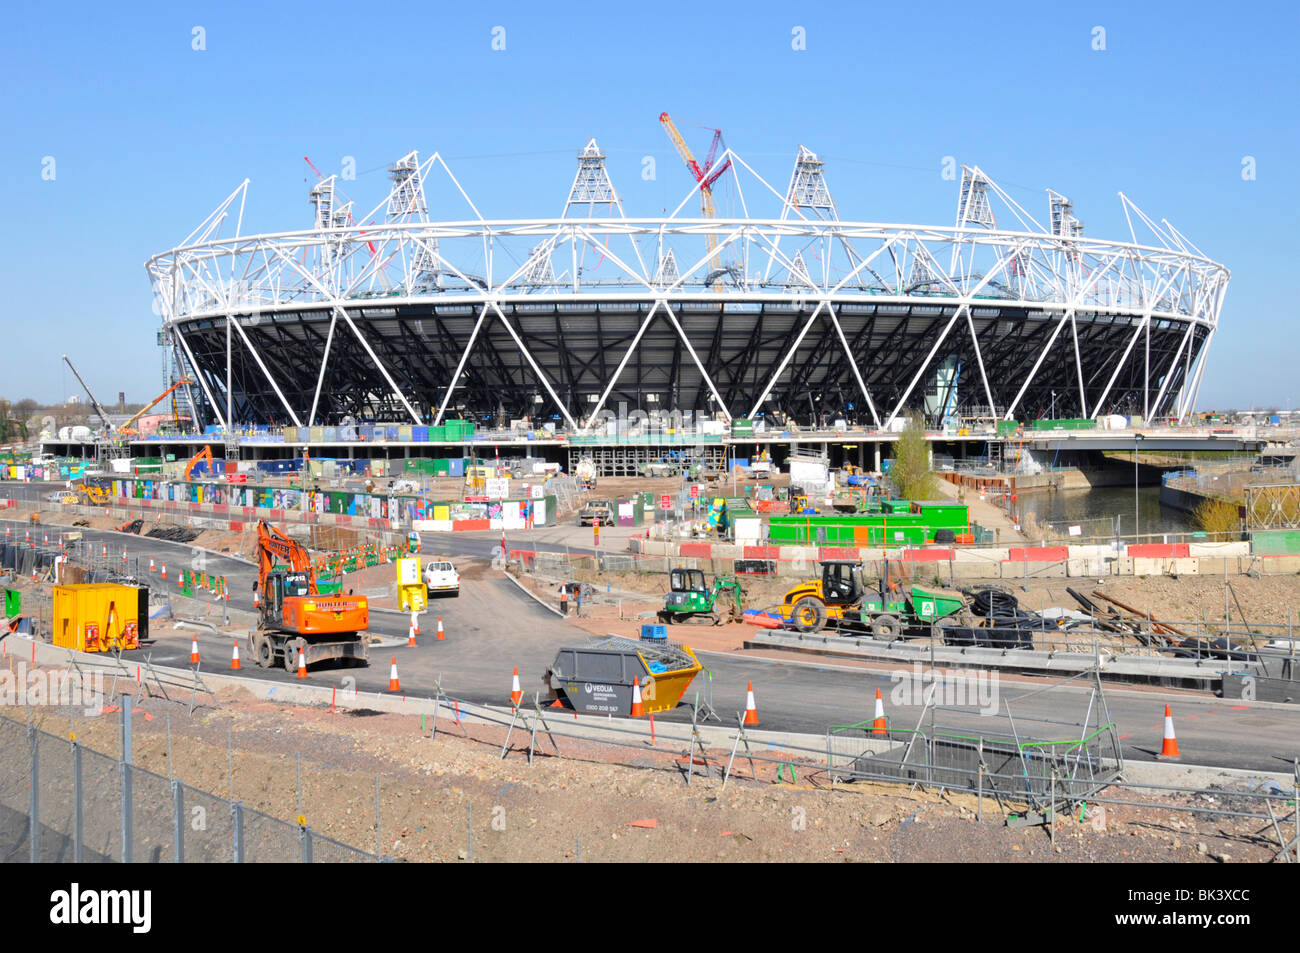 Maschinen Krane & Männer bei der Arbeit in Arbeit 2012 Ost London Olympische Spiele Sport Stadion Bau Baustelle Stratford Newham England GB Stockfoto